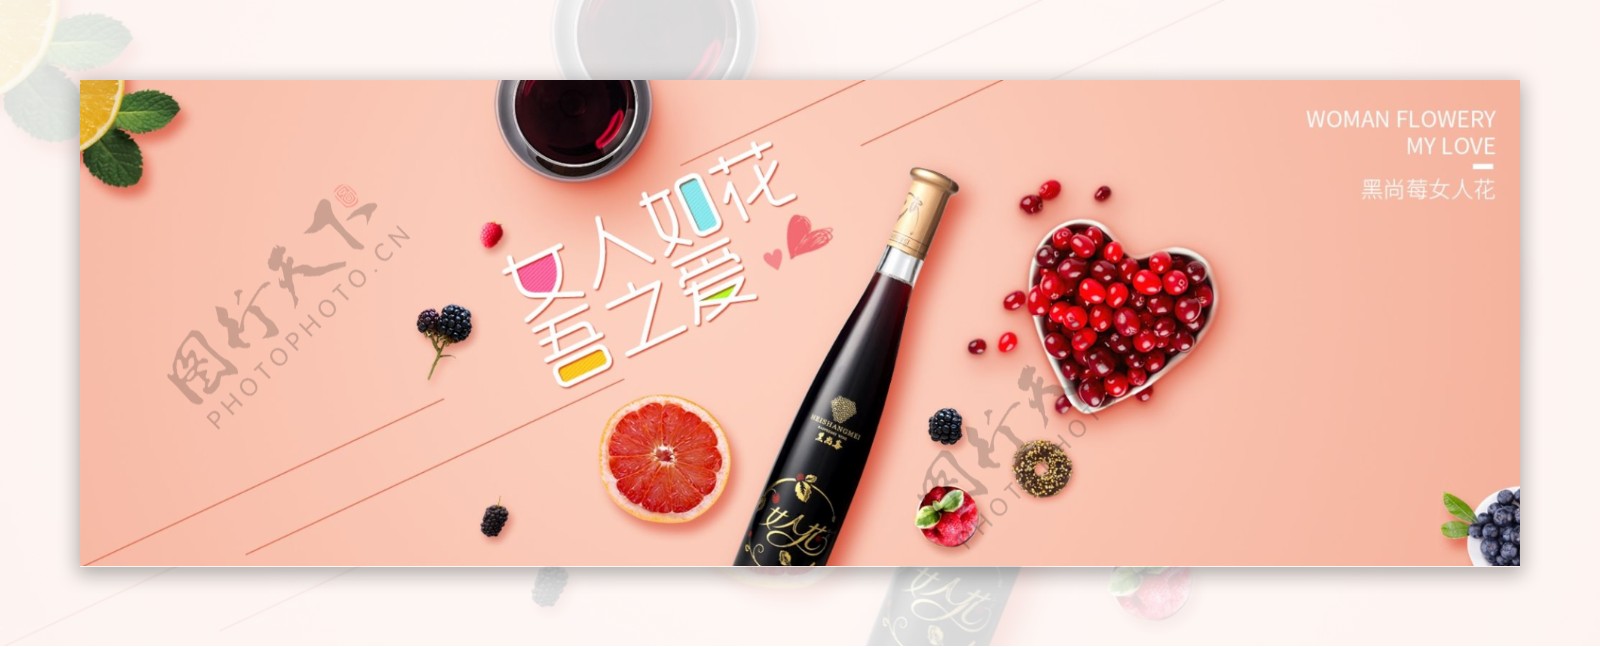 天猫电商淘宝酒全球酒水节促销活动海报banner模板设计